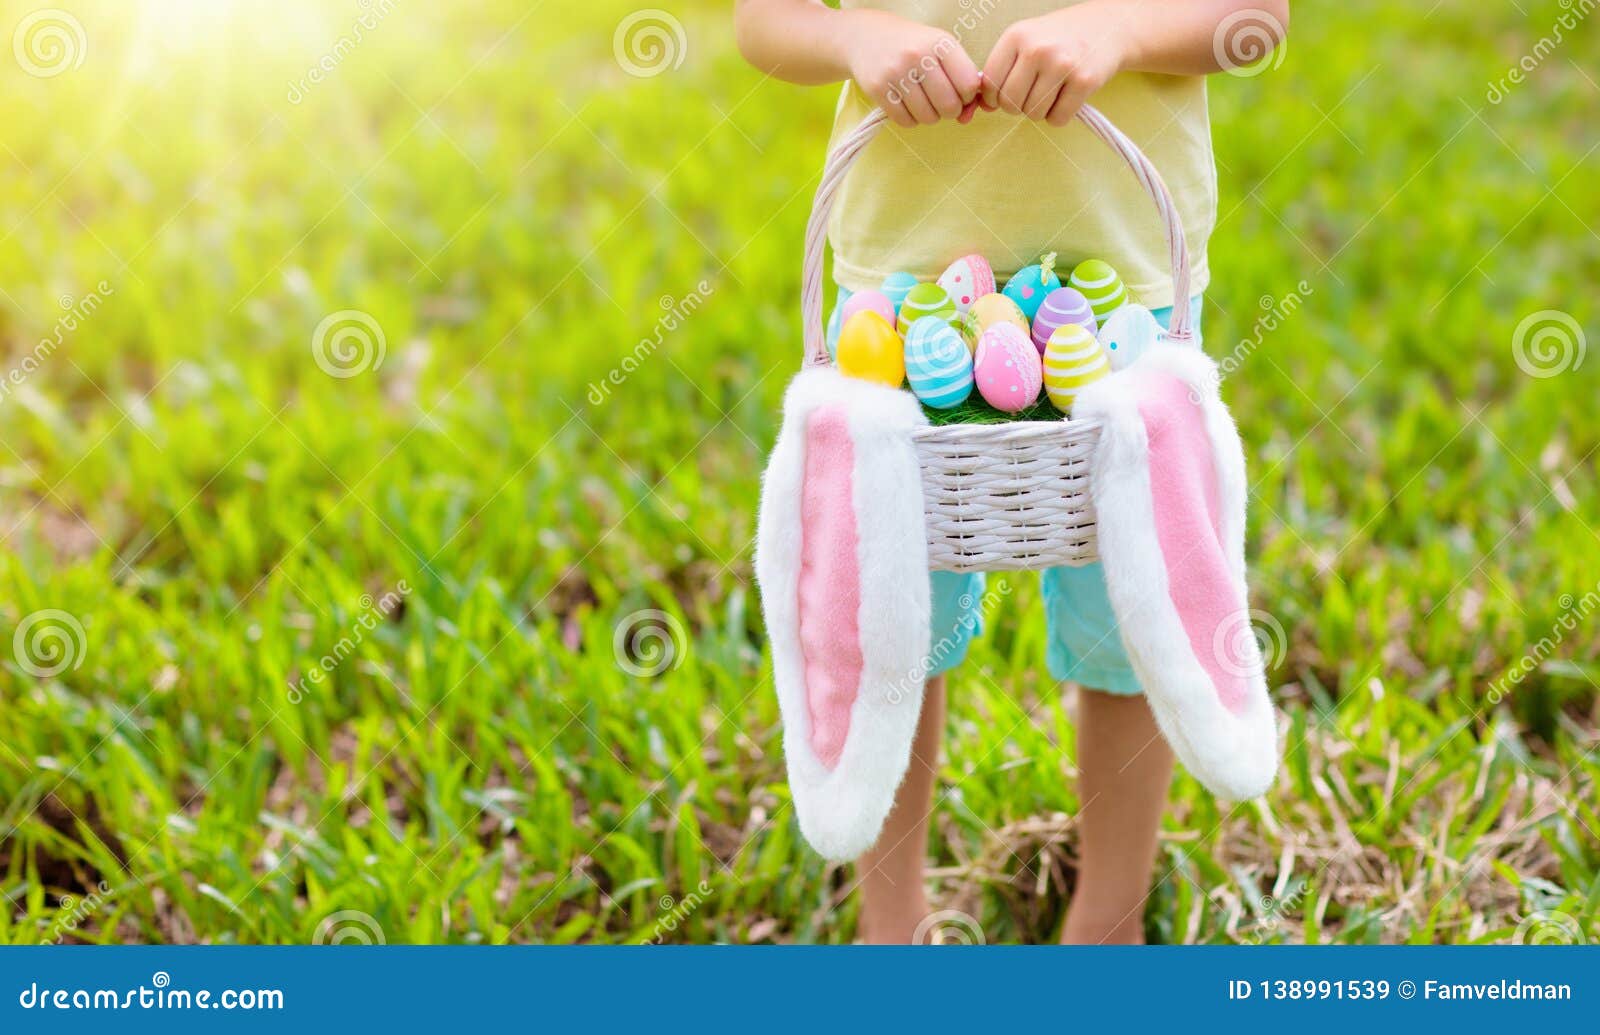 kids with eggs basket on easter egg hunt